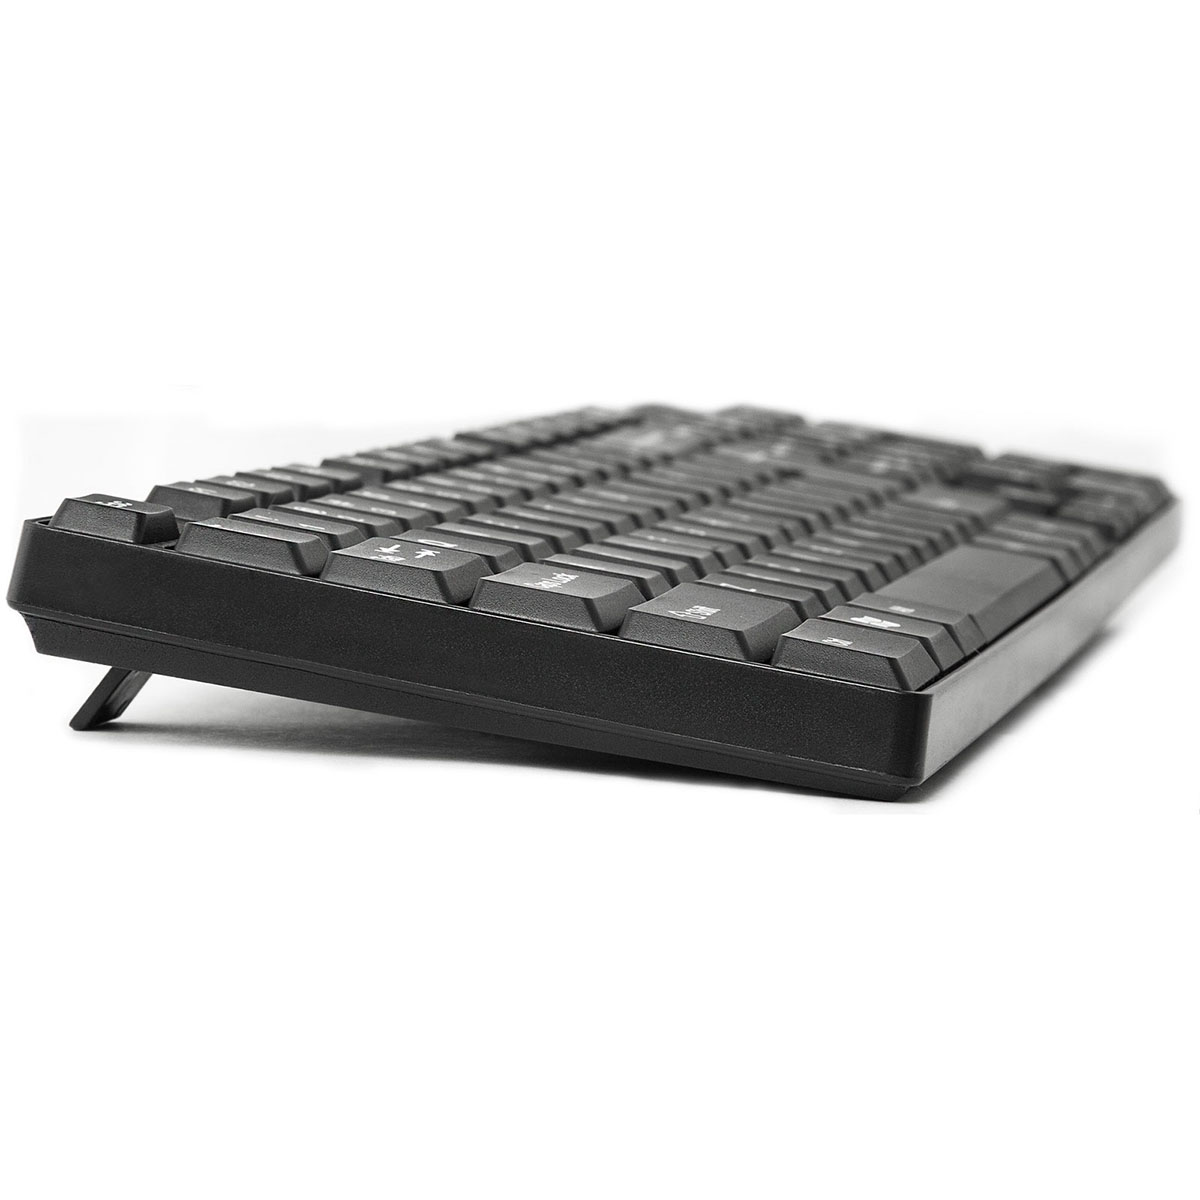 Клавиатура DEFENDER Accent SB-720 RU, проводная, компактная, USB 2.0, цвет черный